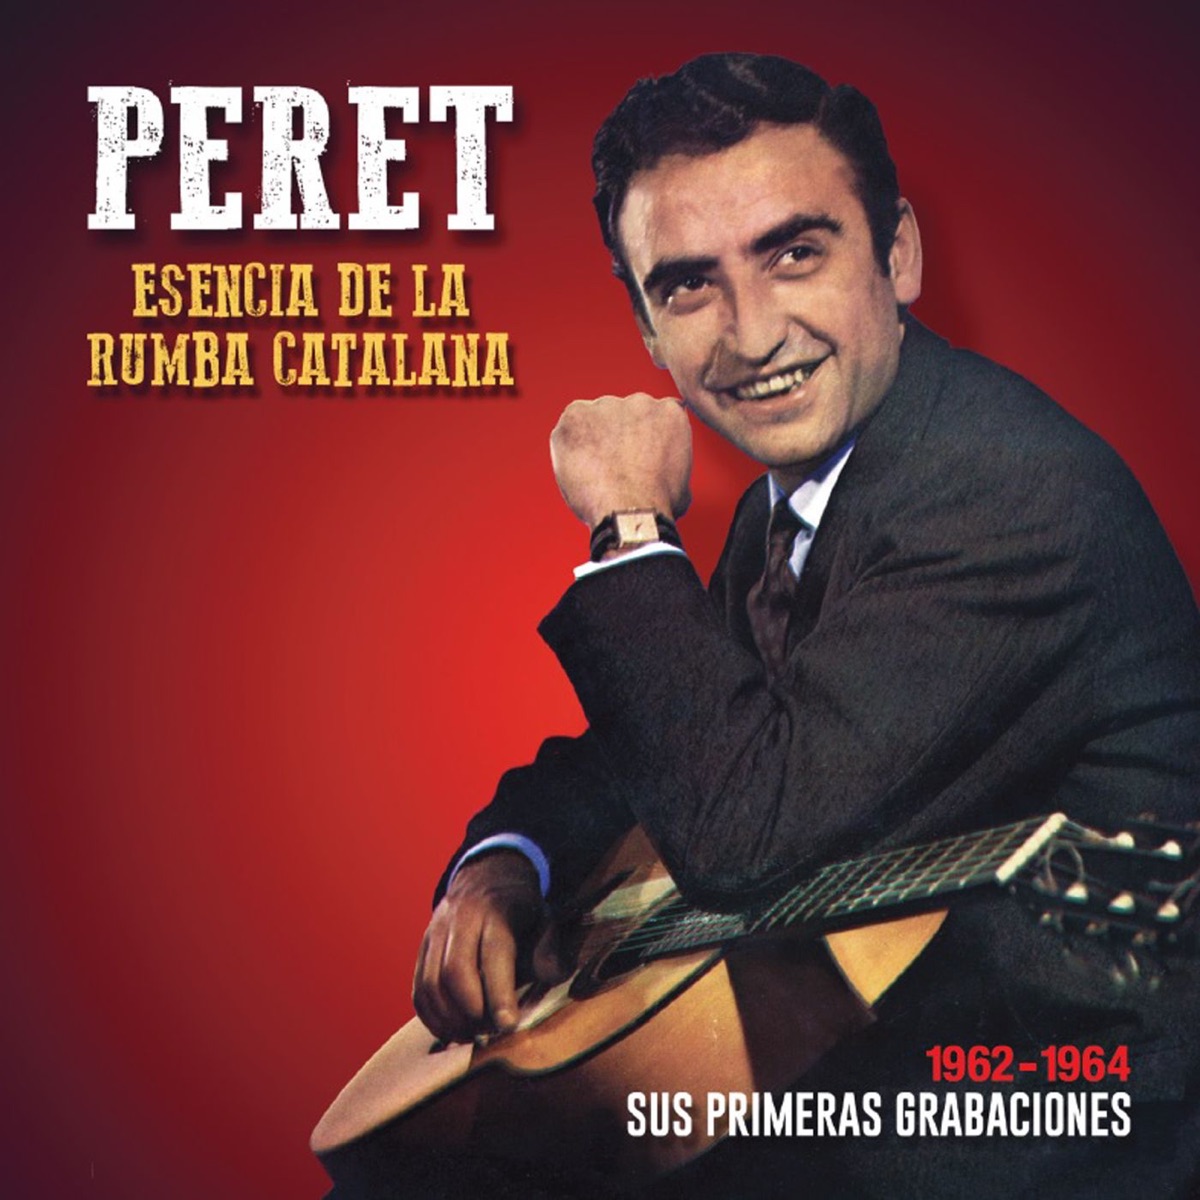 Esencia de la Rumba Catalana: Sus primeras grabaciones - Album by Peret -  Apple Music